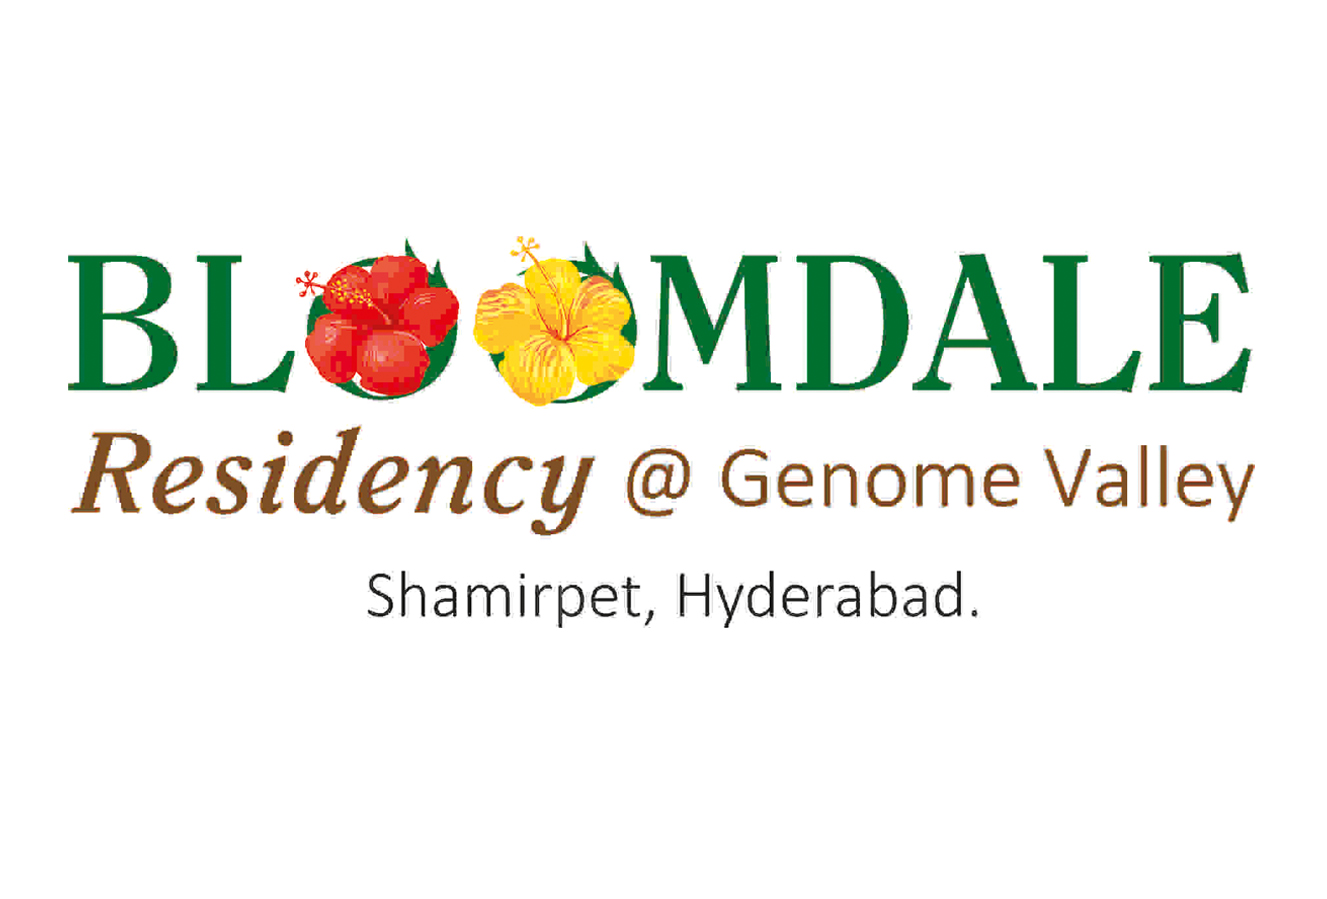 Bloomdale Residency at Genome Valley